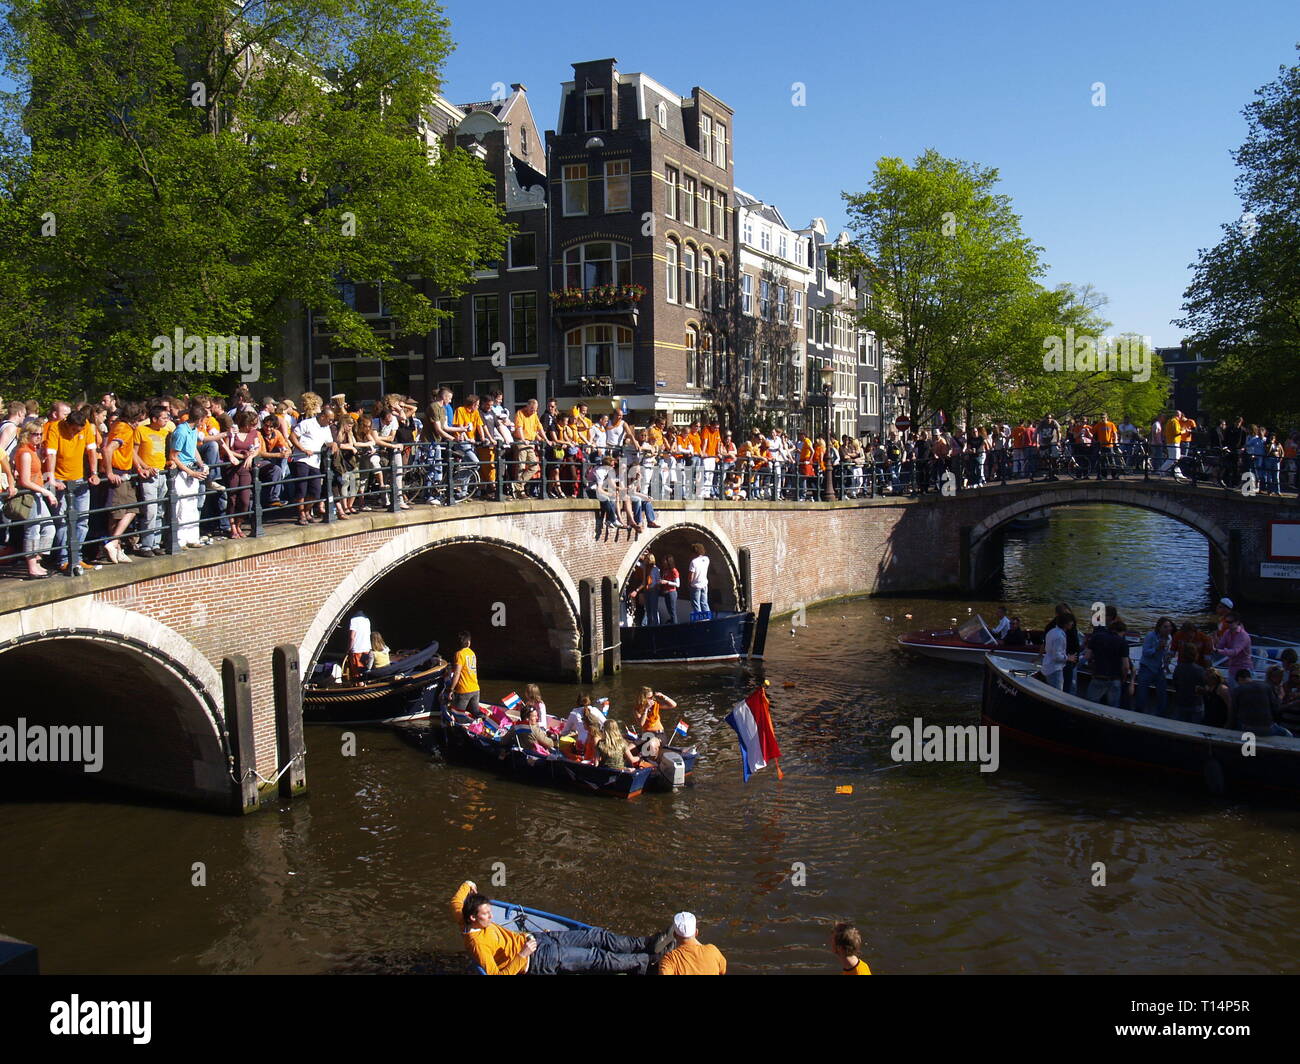 Koninginnedag (deutsch Königinnentag) ist Nationalfeiertag in den Niederlanden, der jährlich am 30. April gefeiert wird. An diesem Tag feiern die Nied Stock Photo